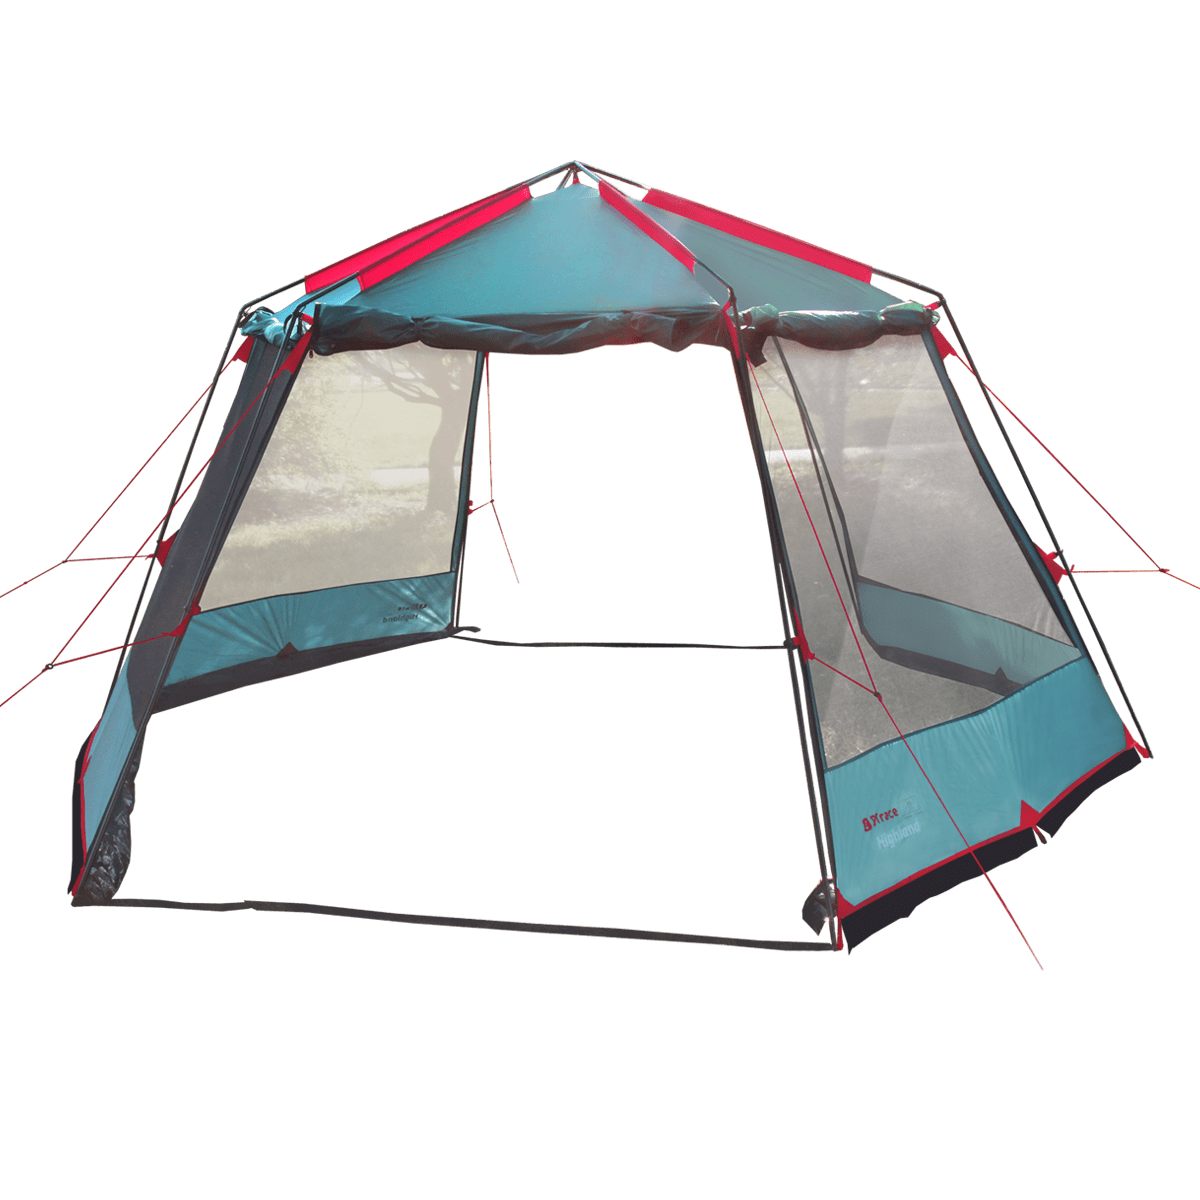 картинка Палатка-шатер BTrace Highland  (Зеленый)